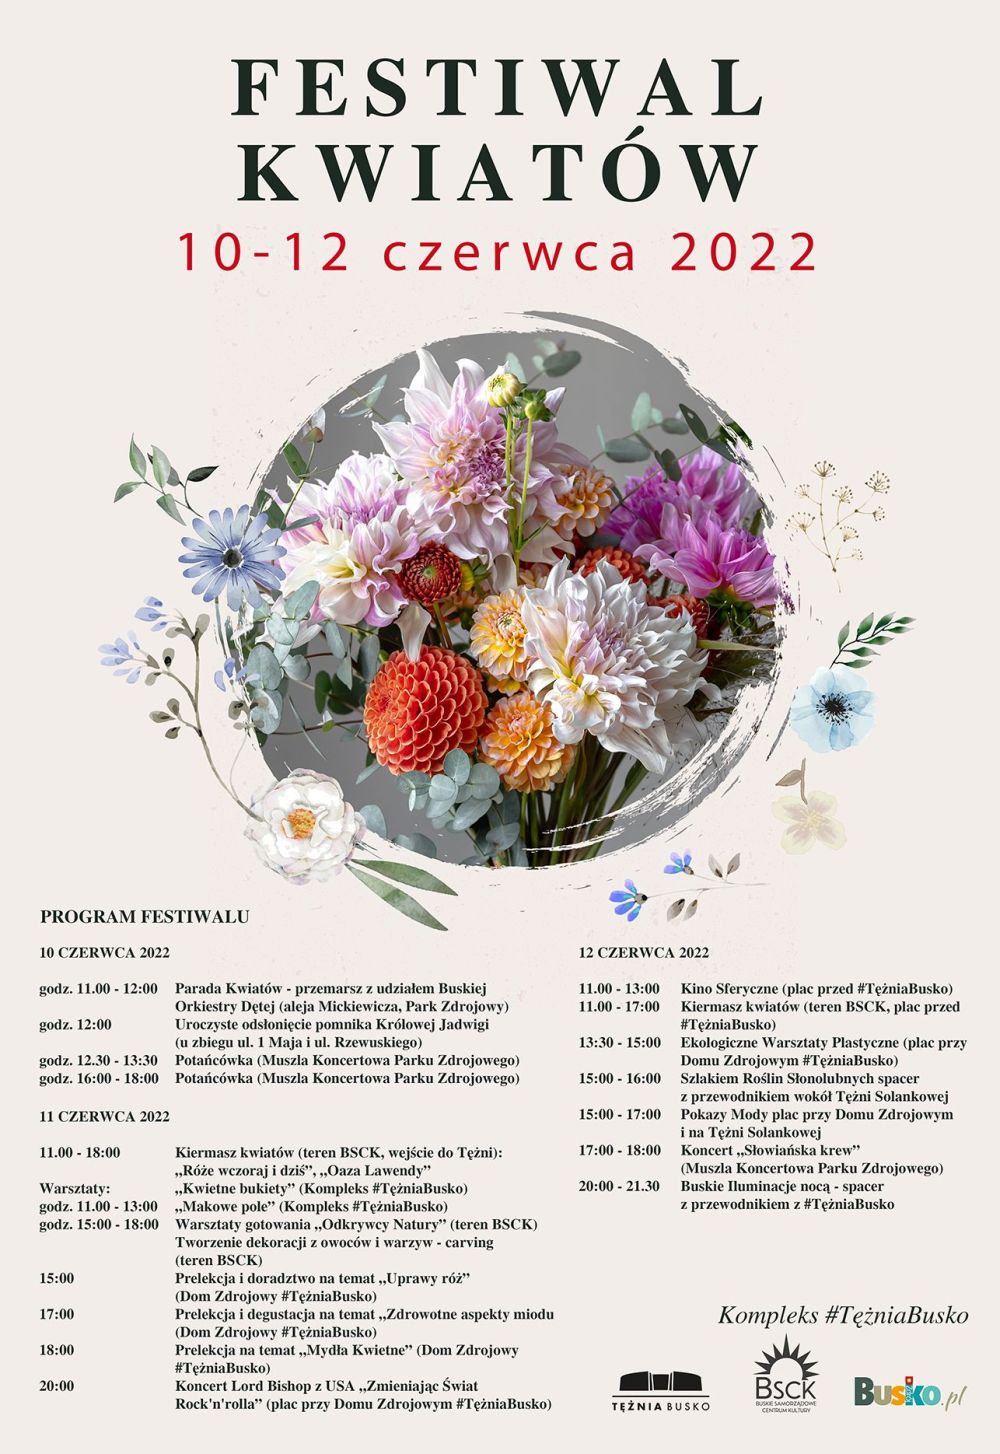 Festiwal kwiatow2022 program m